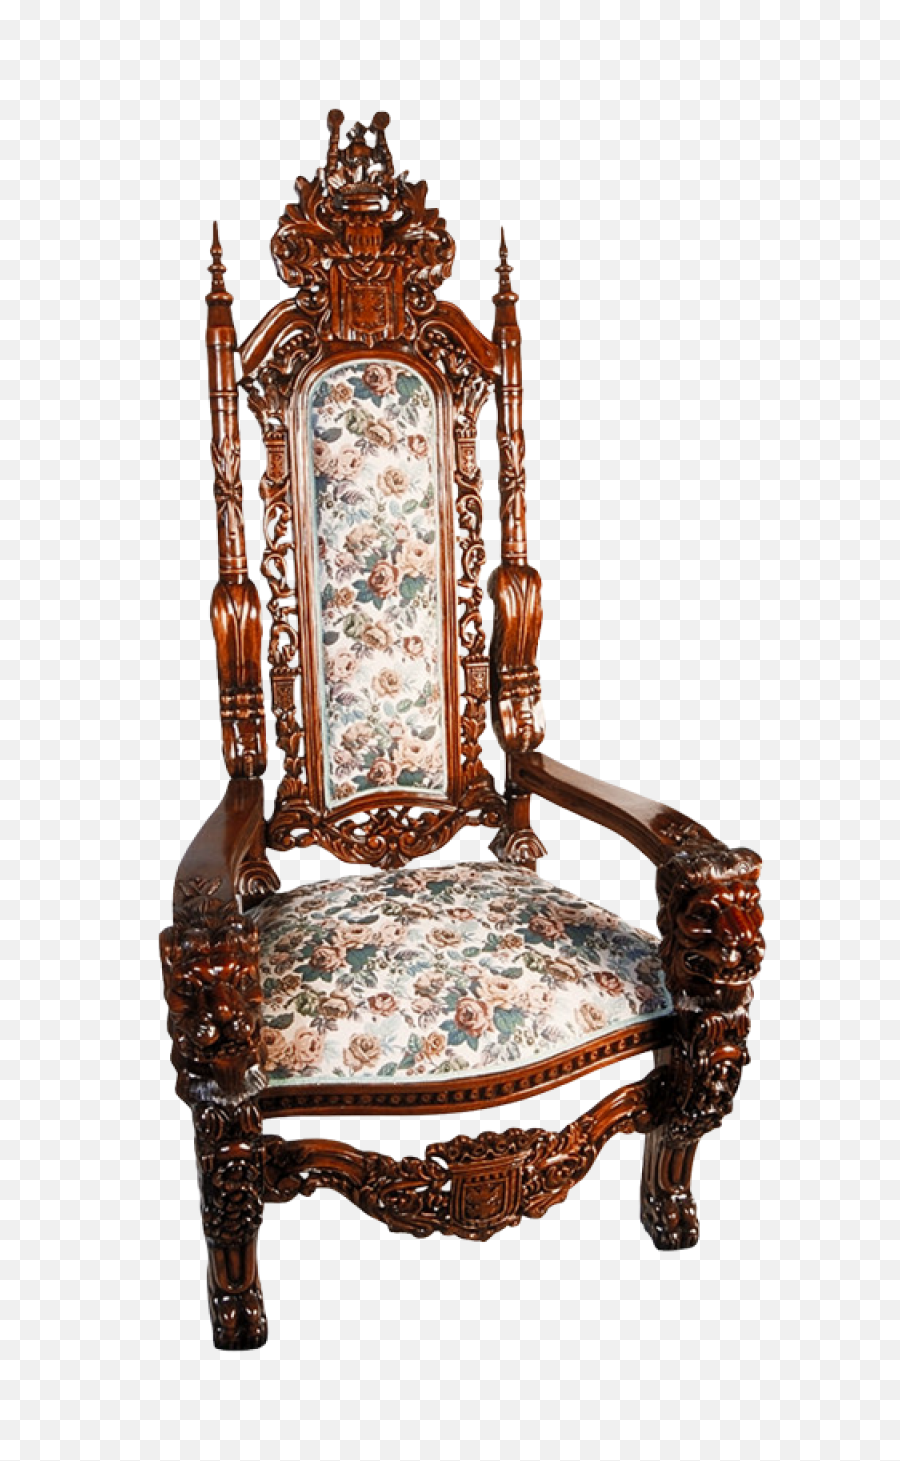 Old Vintage Chair Png Transparent Image - Pngpix Transparent Antique Chair,Vintage Transparent